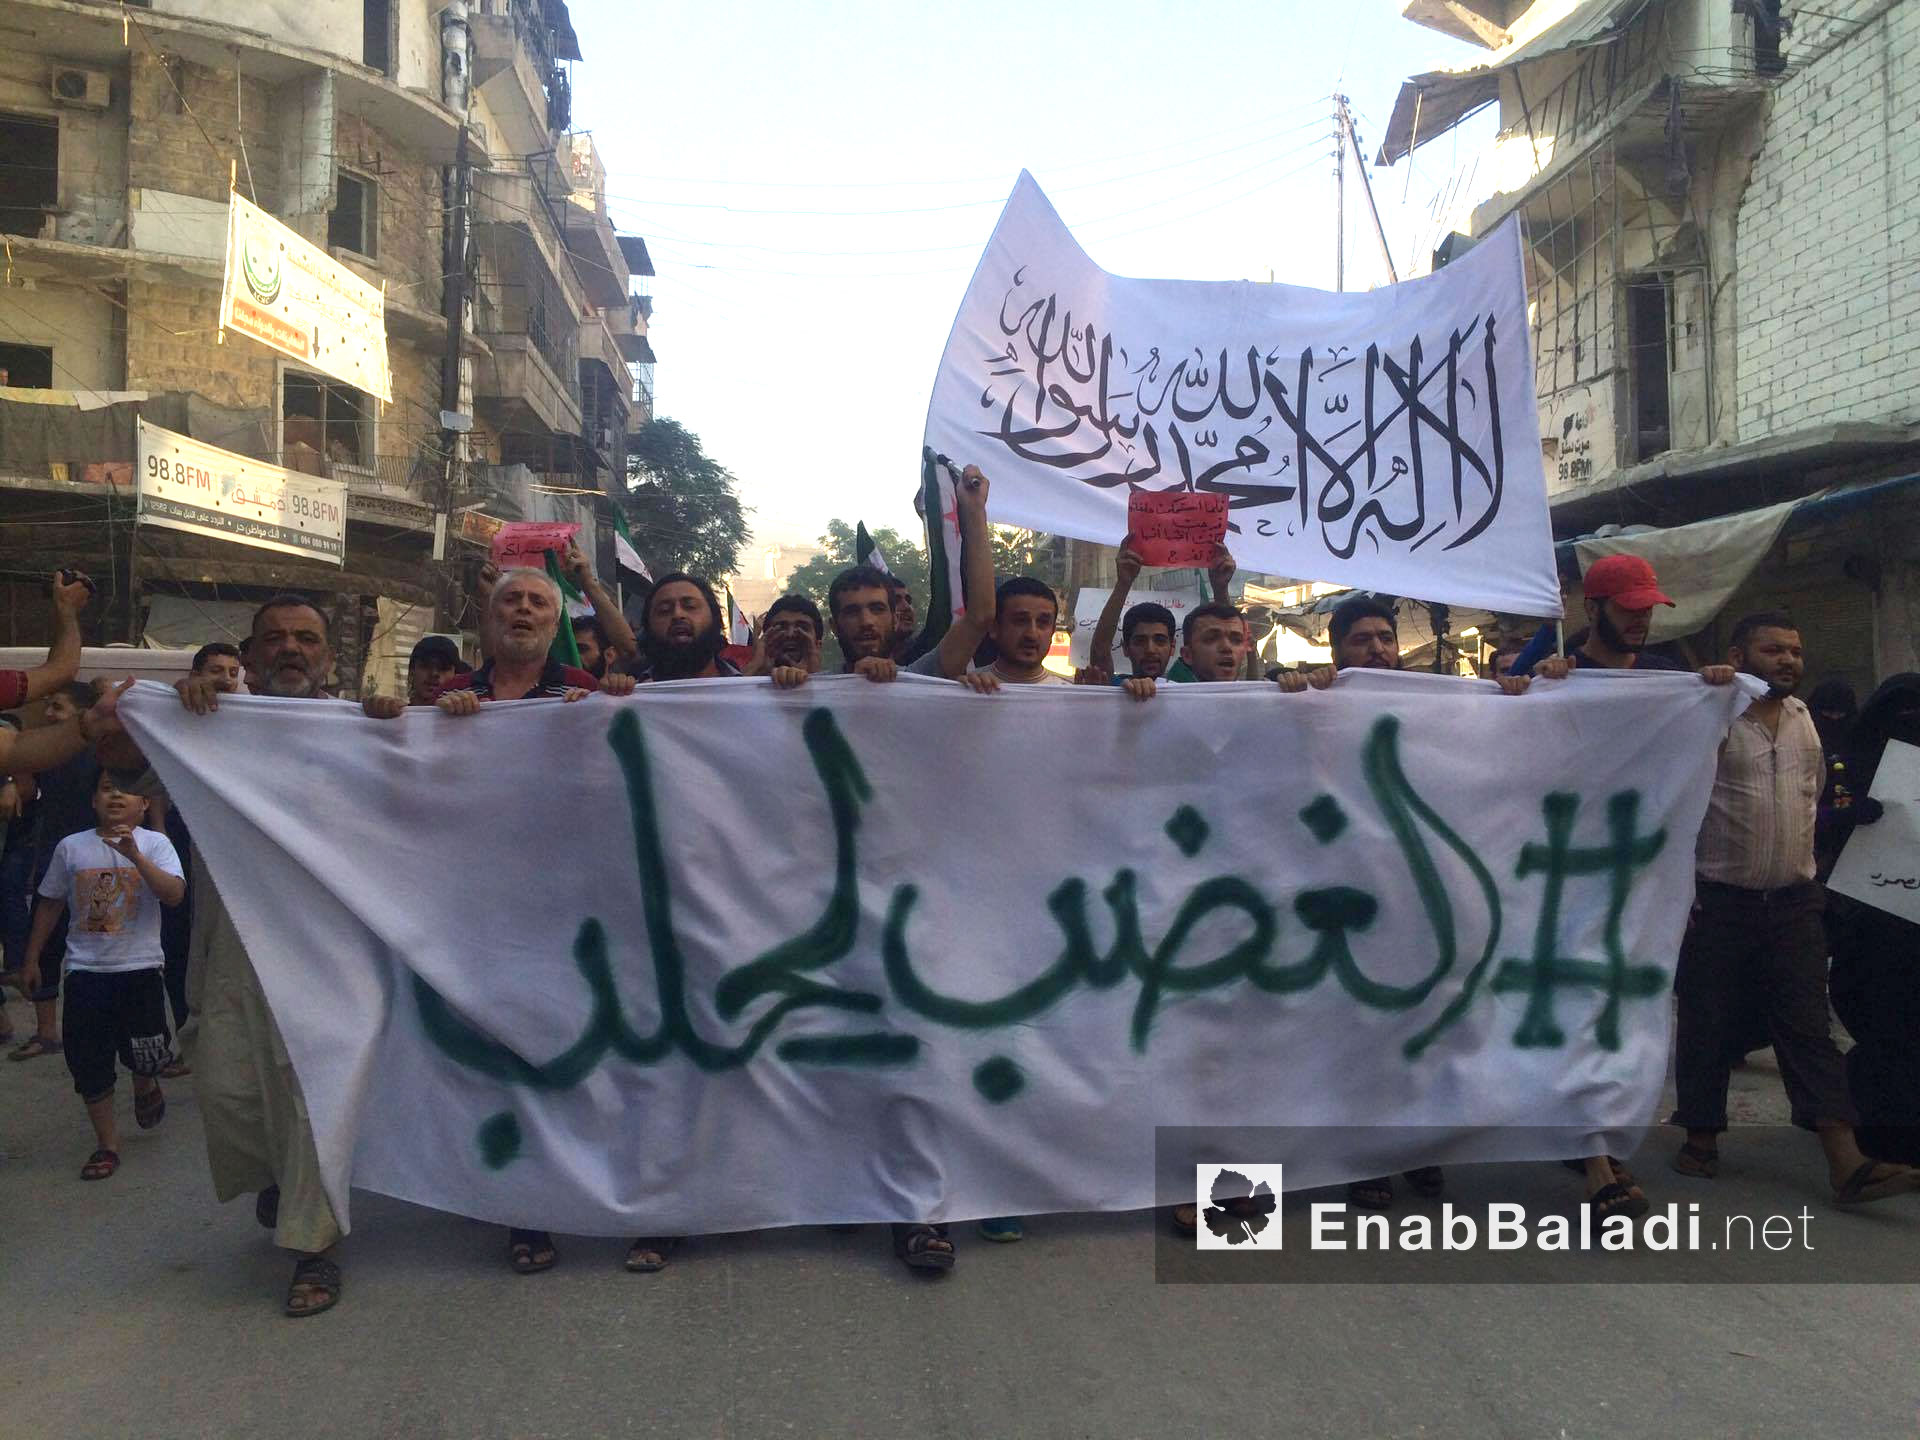 مظاهرة في مدينة حلب دعمًا لمعركة "الغضب لحلب" - 31 تموز 2016 (عنب بلدي)